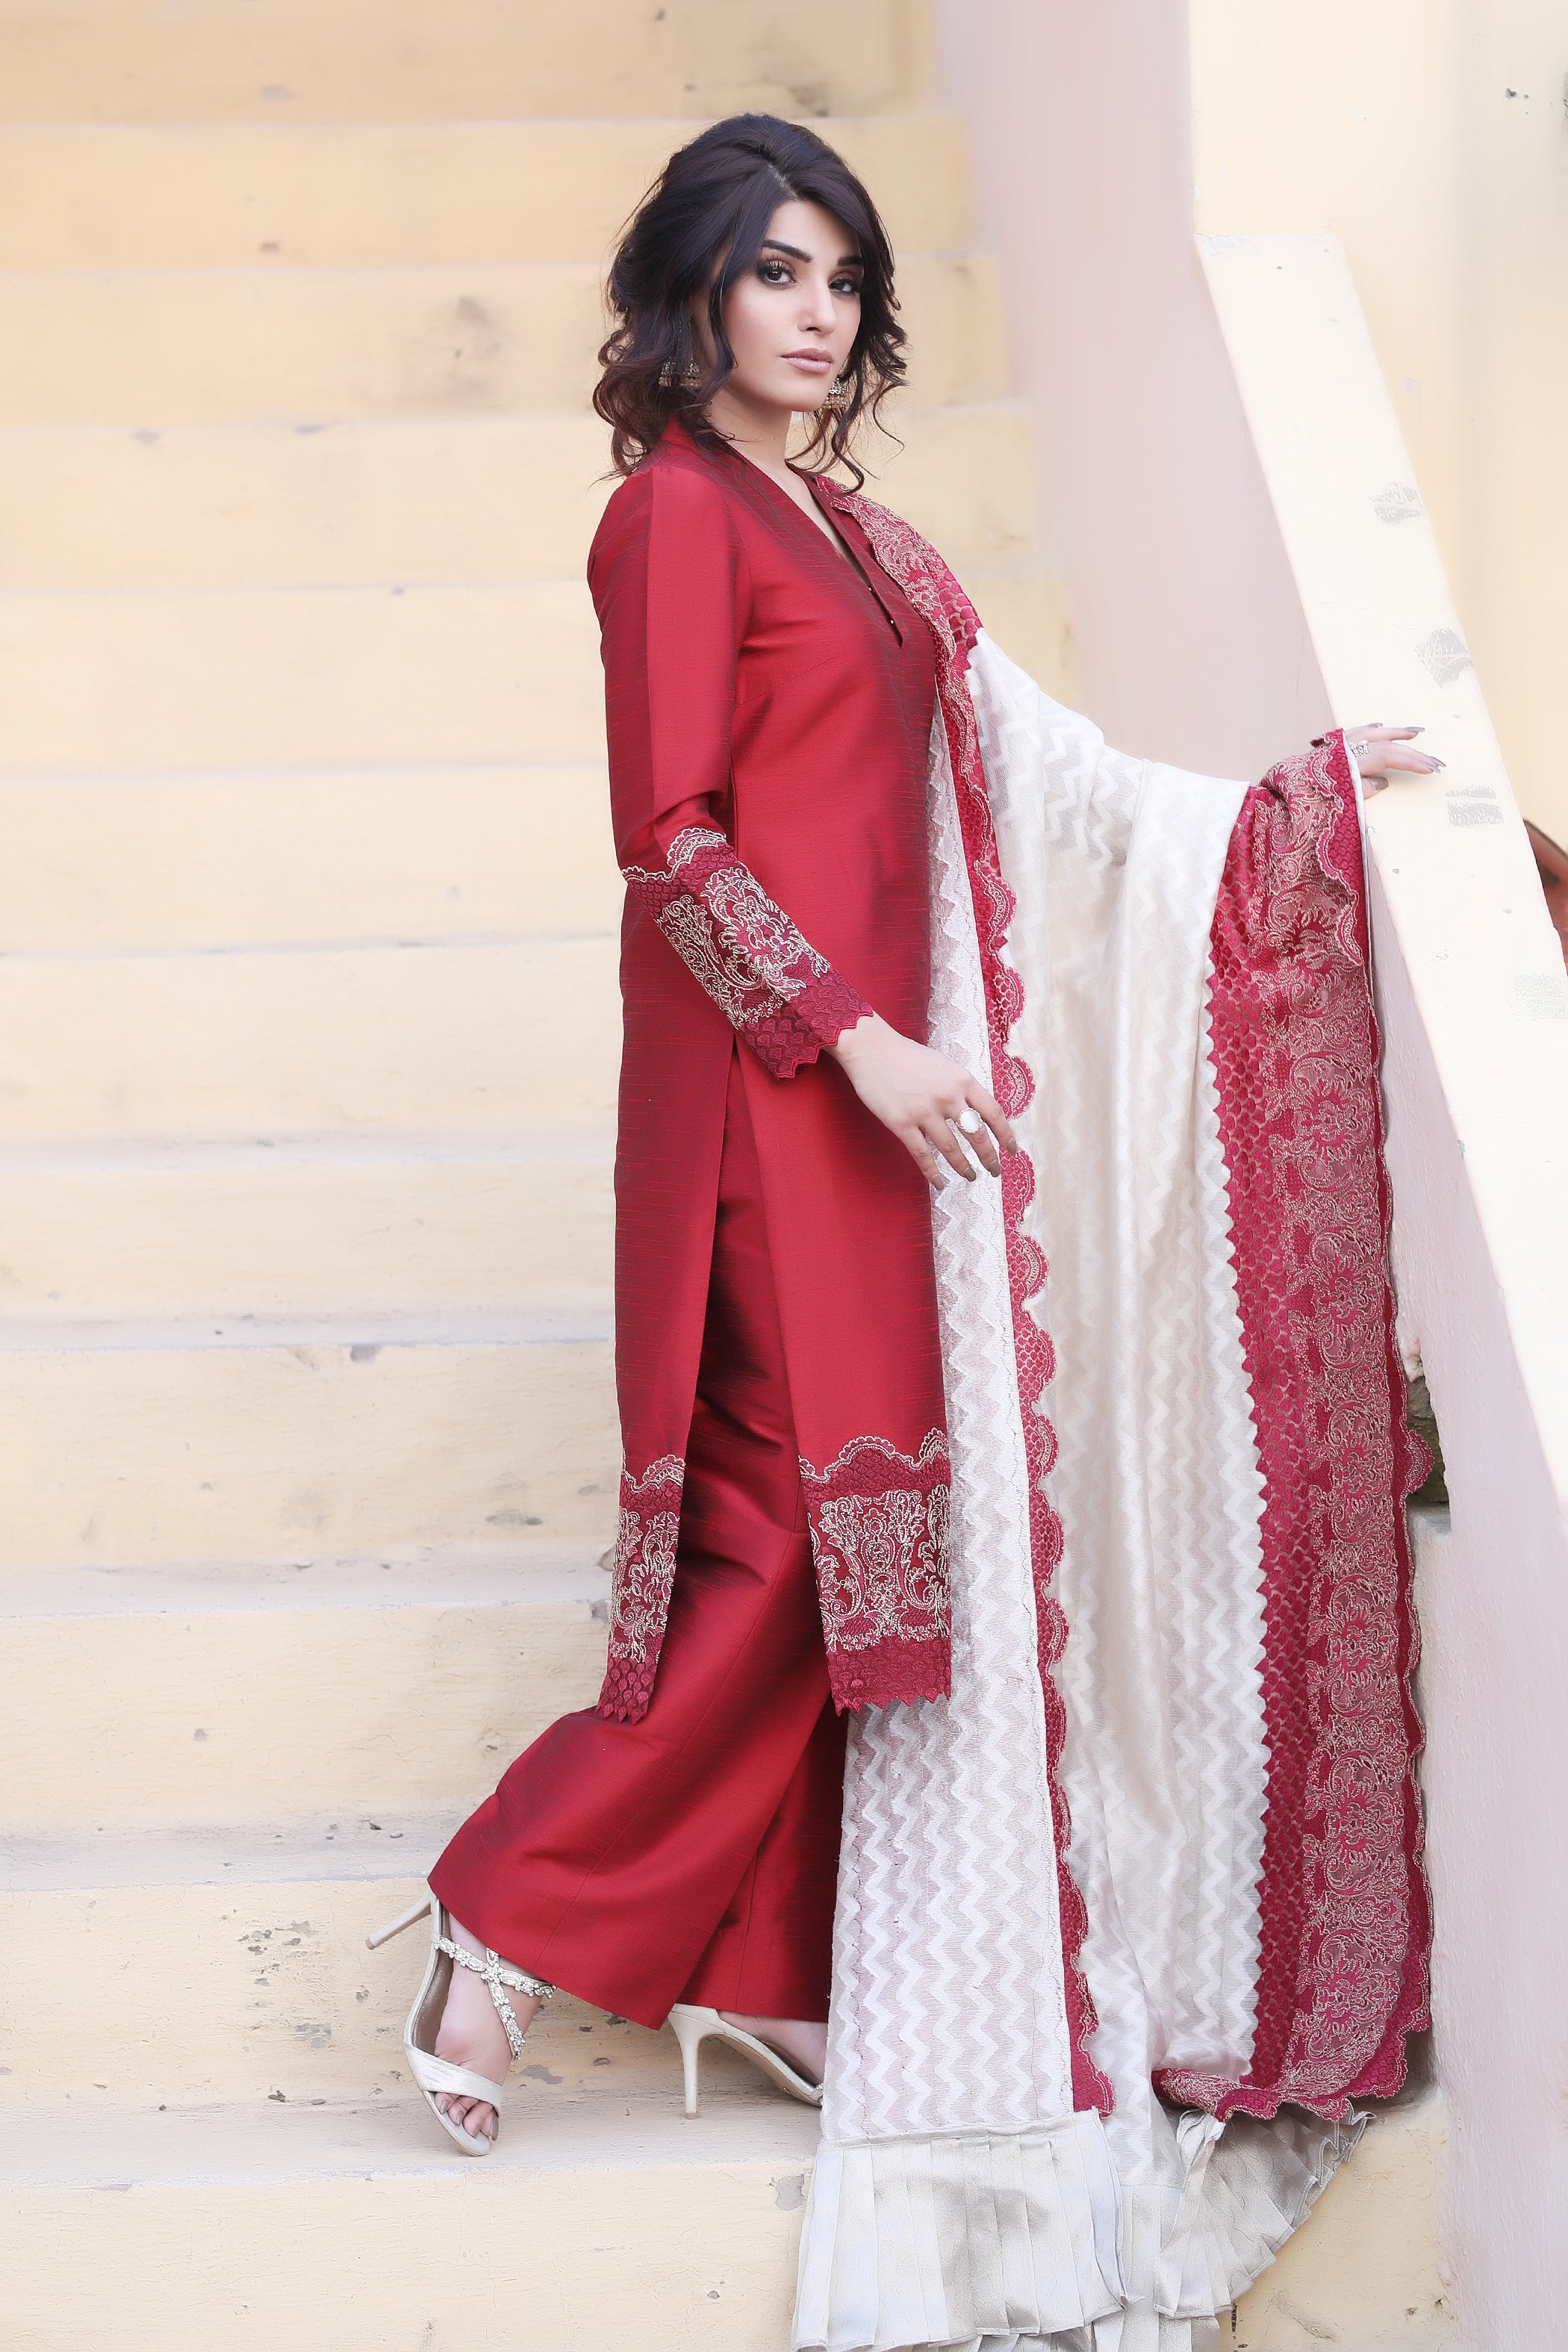 Radiant Rouge - Henna Mehndi